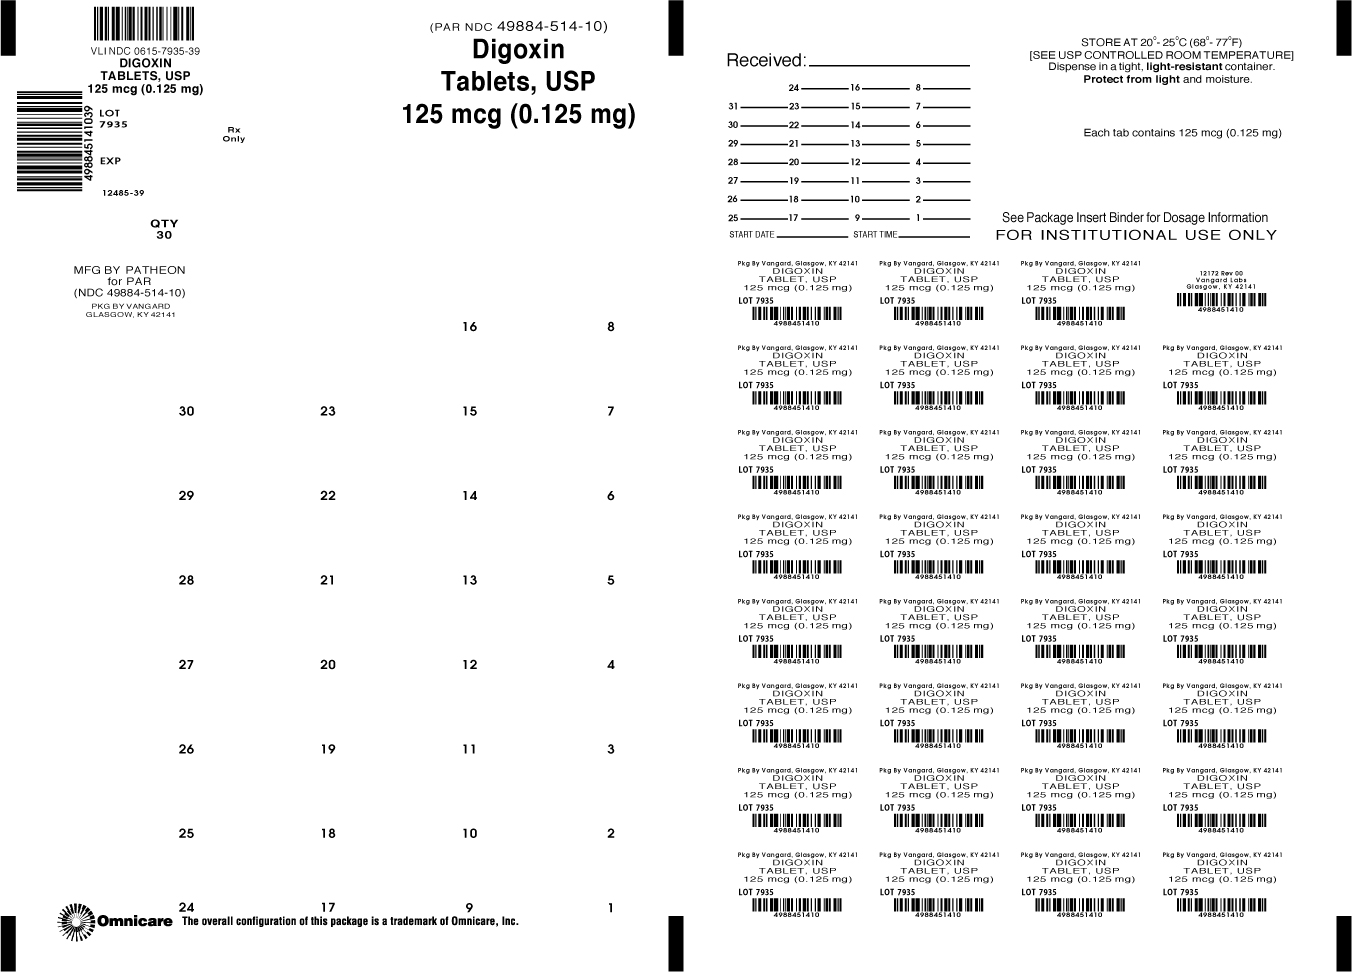 Digoxin Tablet, USP 125mcg (0.125mg) Bingo Card